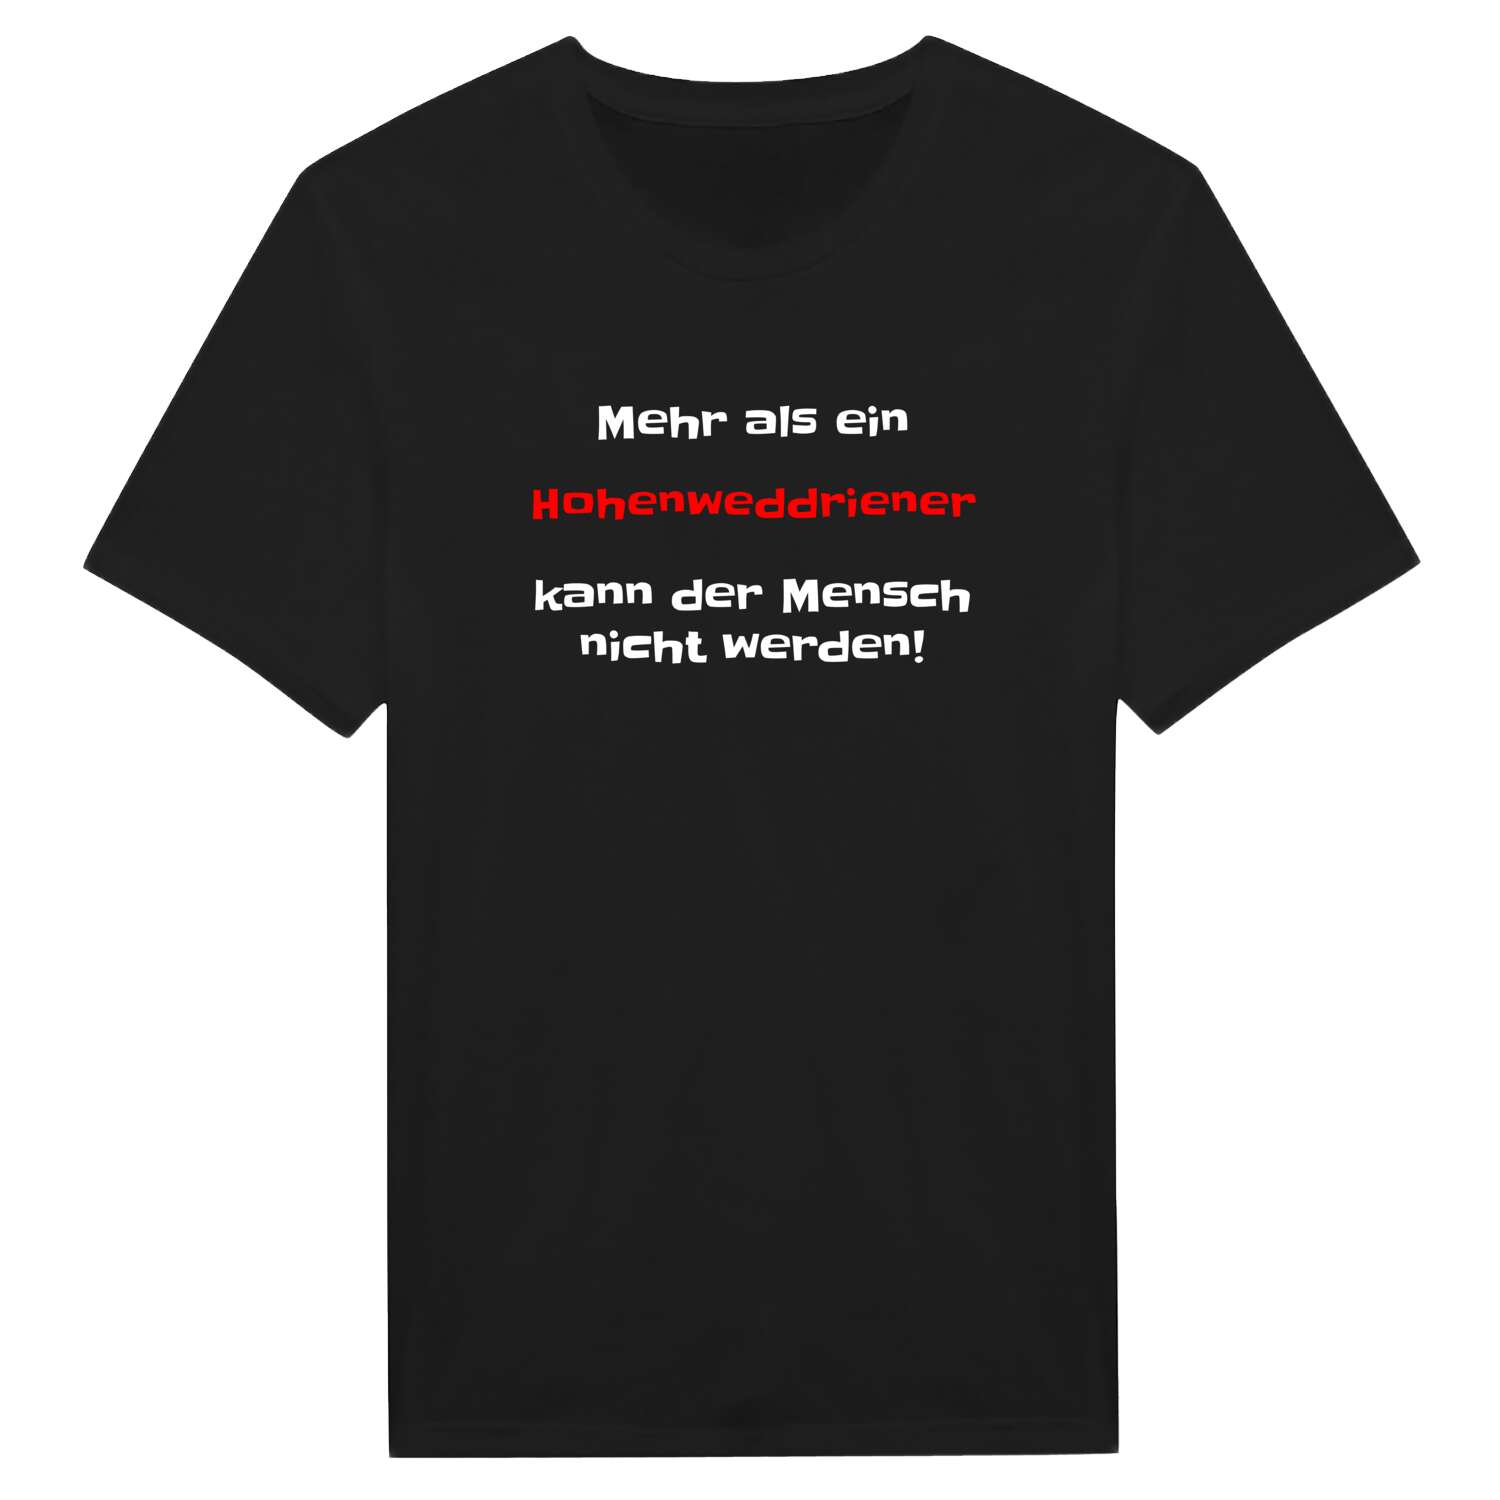 Hohenweddrien T-Shirt »Mehr als ein«